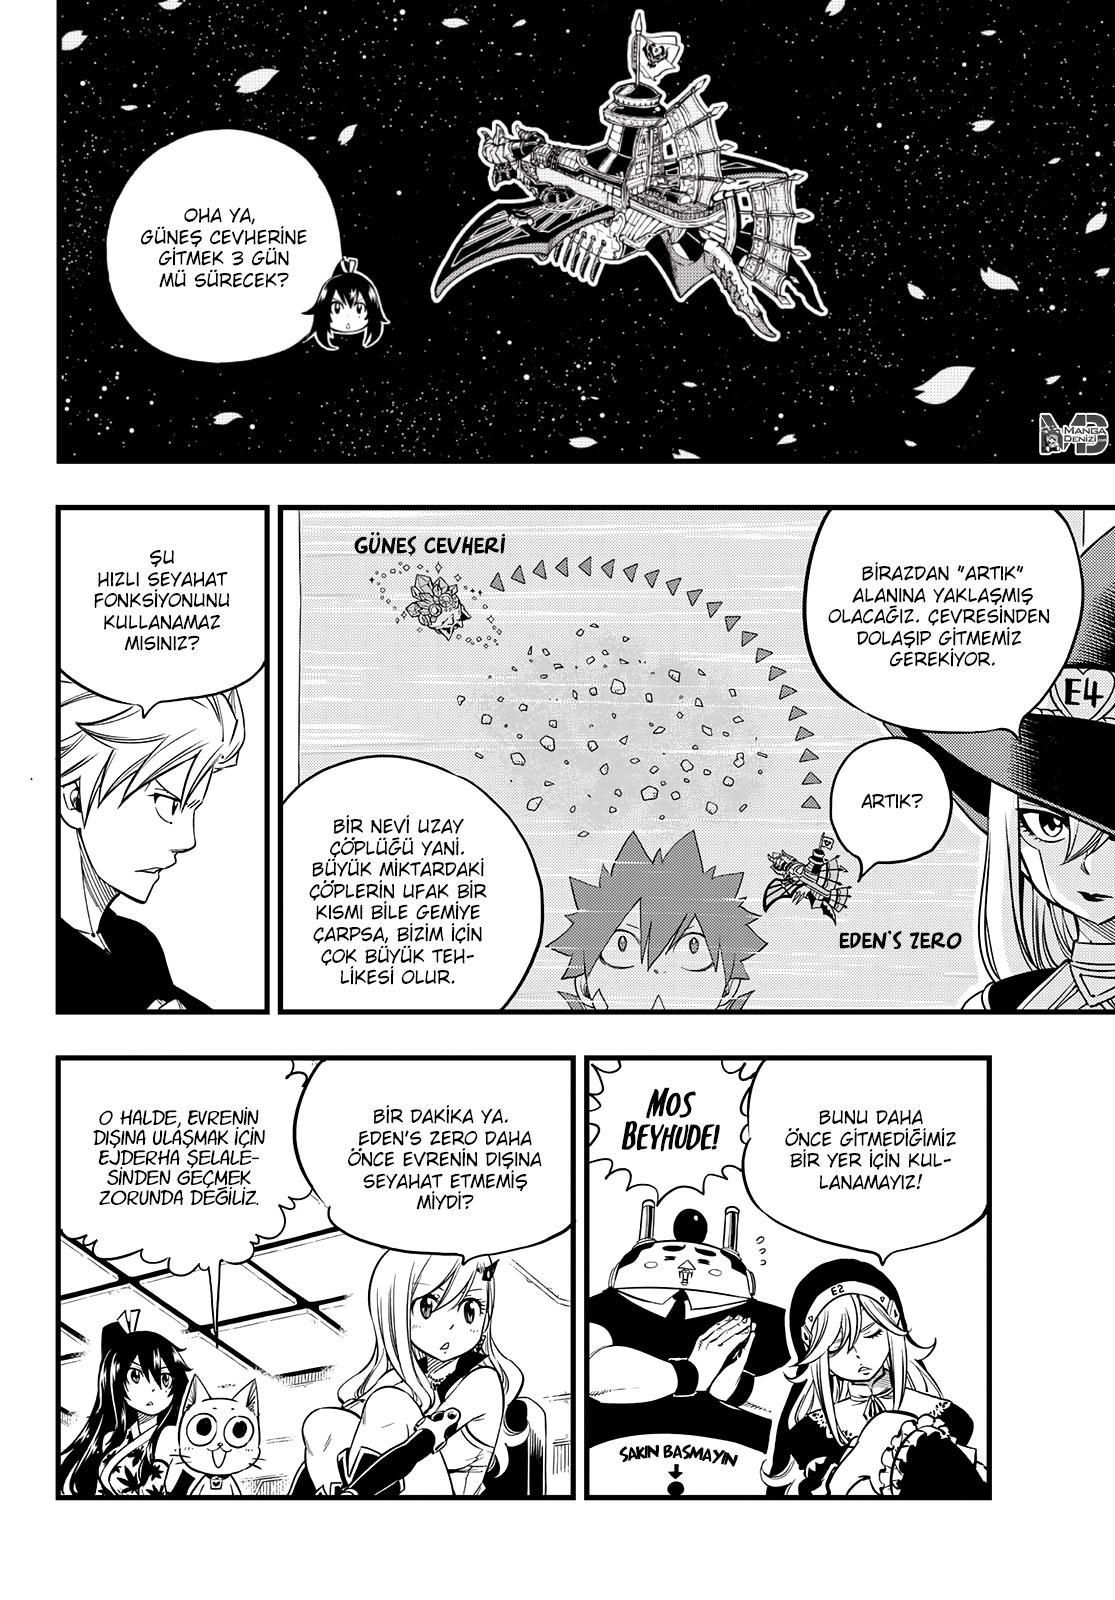 Eden's Zero mangasının 049 bölümünün 3. sayfasını okuyorsunuz.